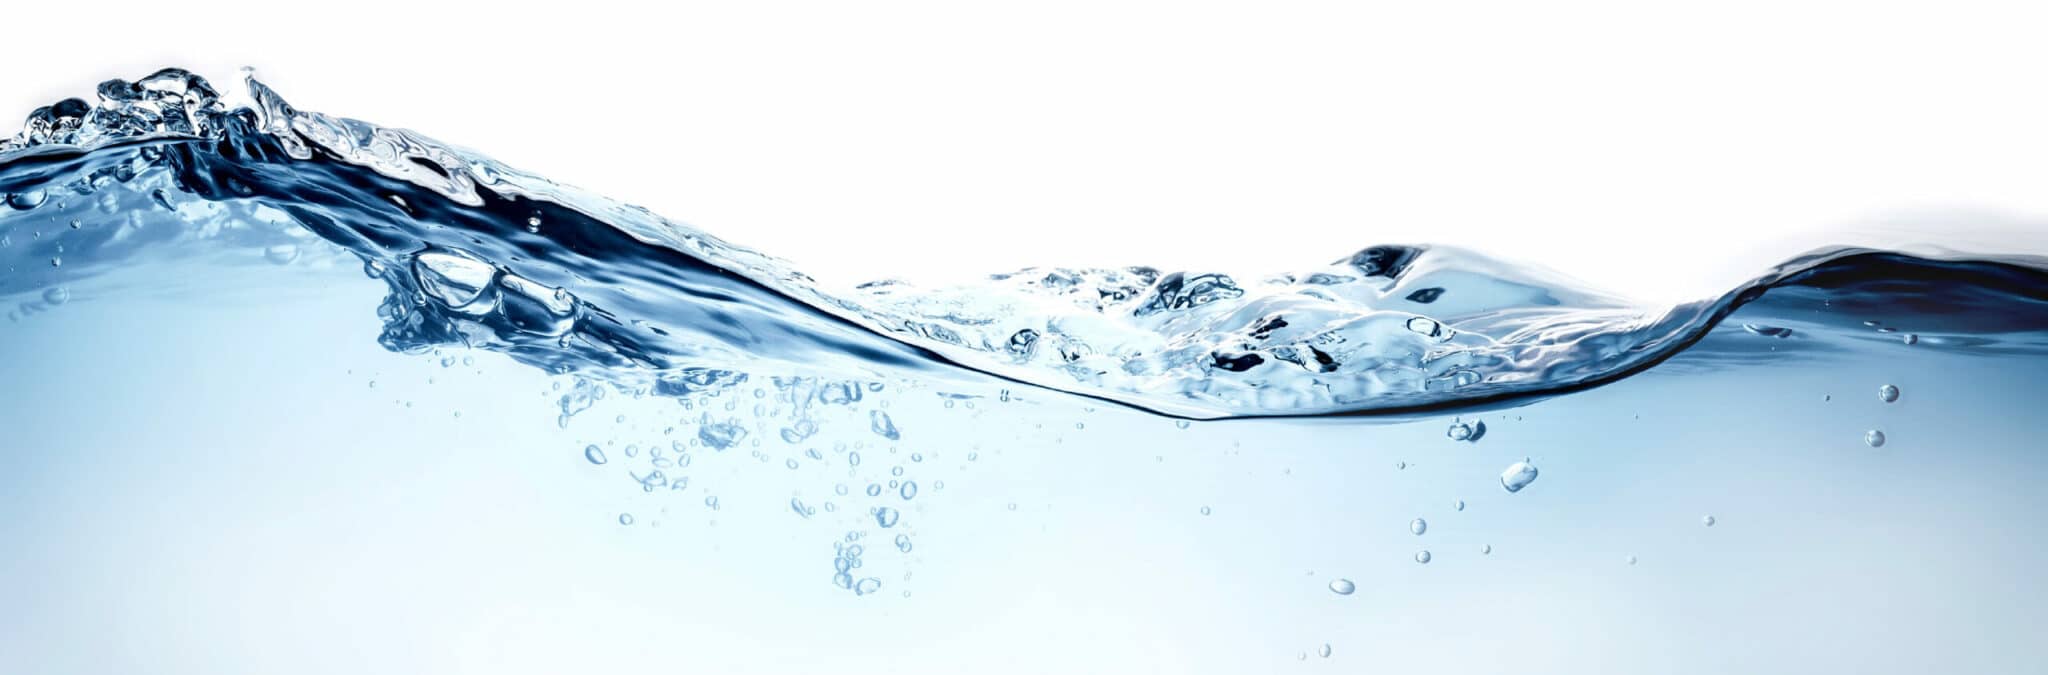 4 mythes démystifiés de l'eau adoucie